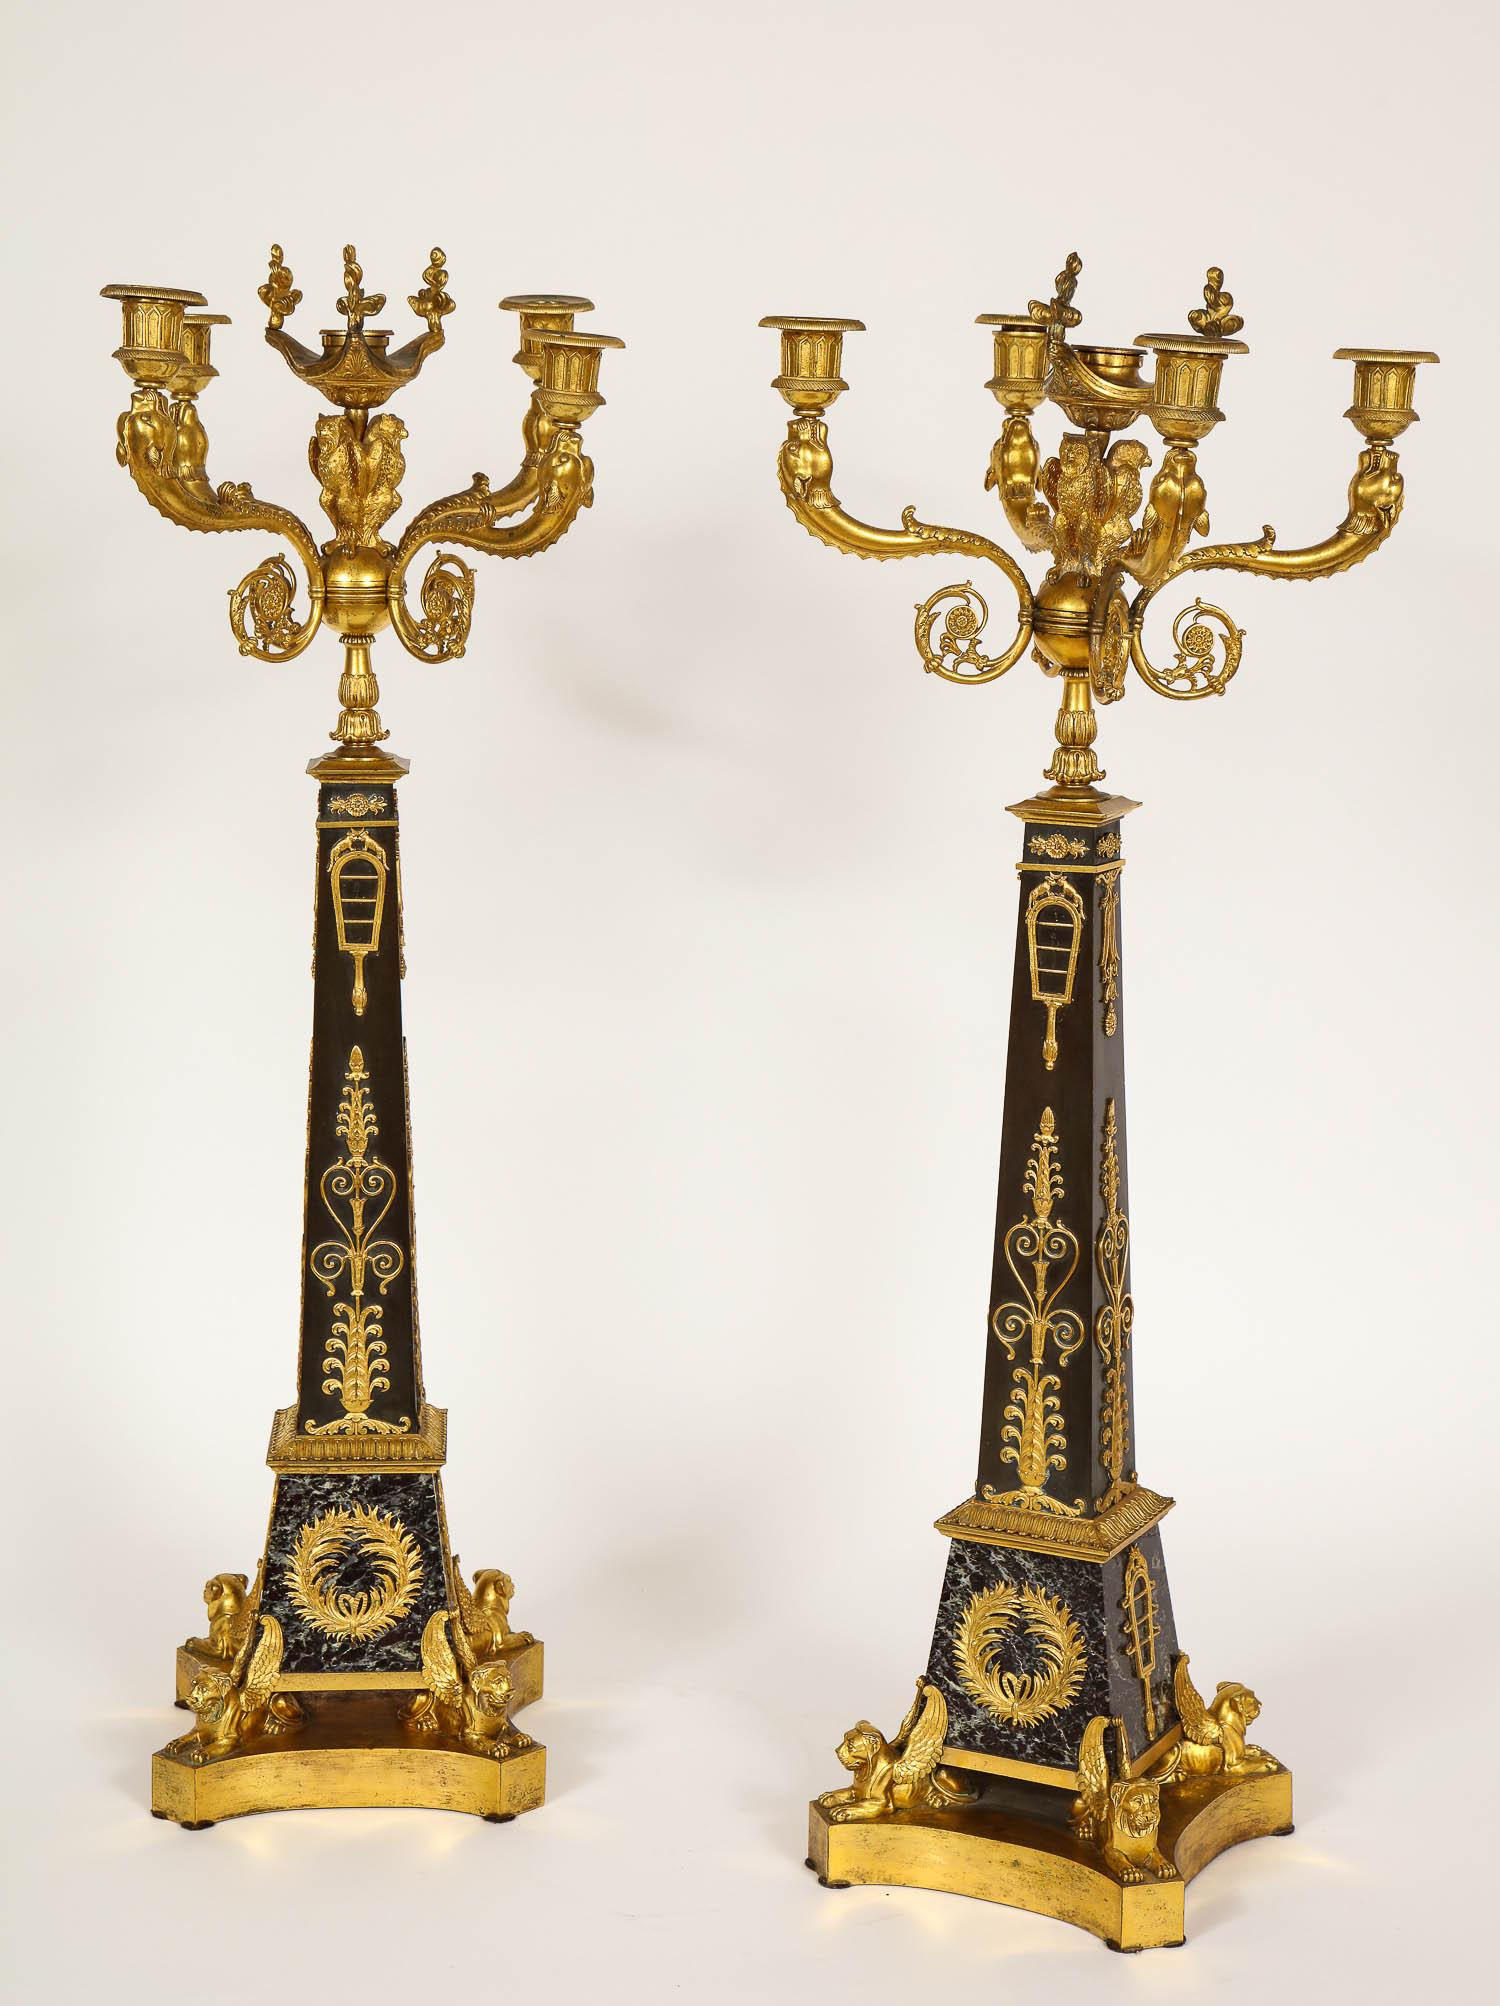 Magnifique paire de candélabres à cinq lumières en bronze doré et bronze patiné d'époque Empire, attribuée à Claude Galle et réalisée au début des années 1800. Cette paire de candélabres est posée sur une base en marbre Verde Antico avec des